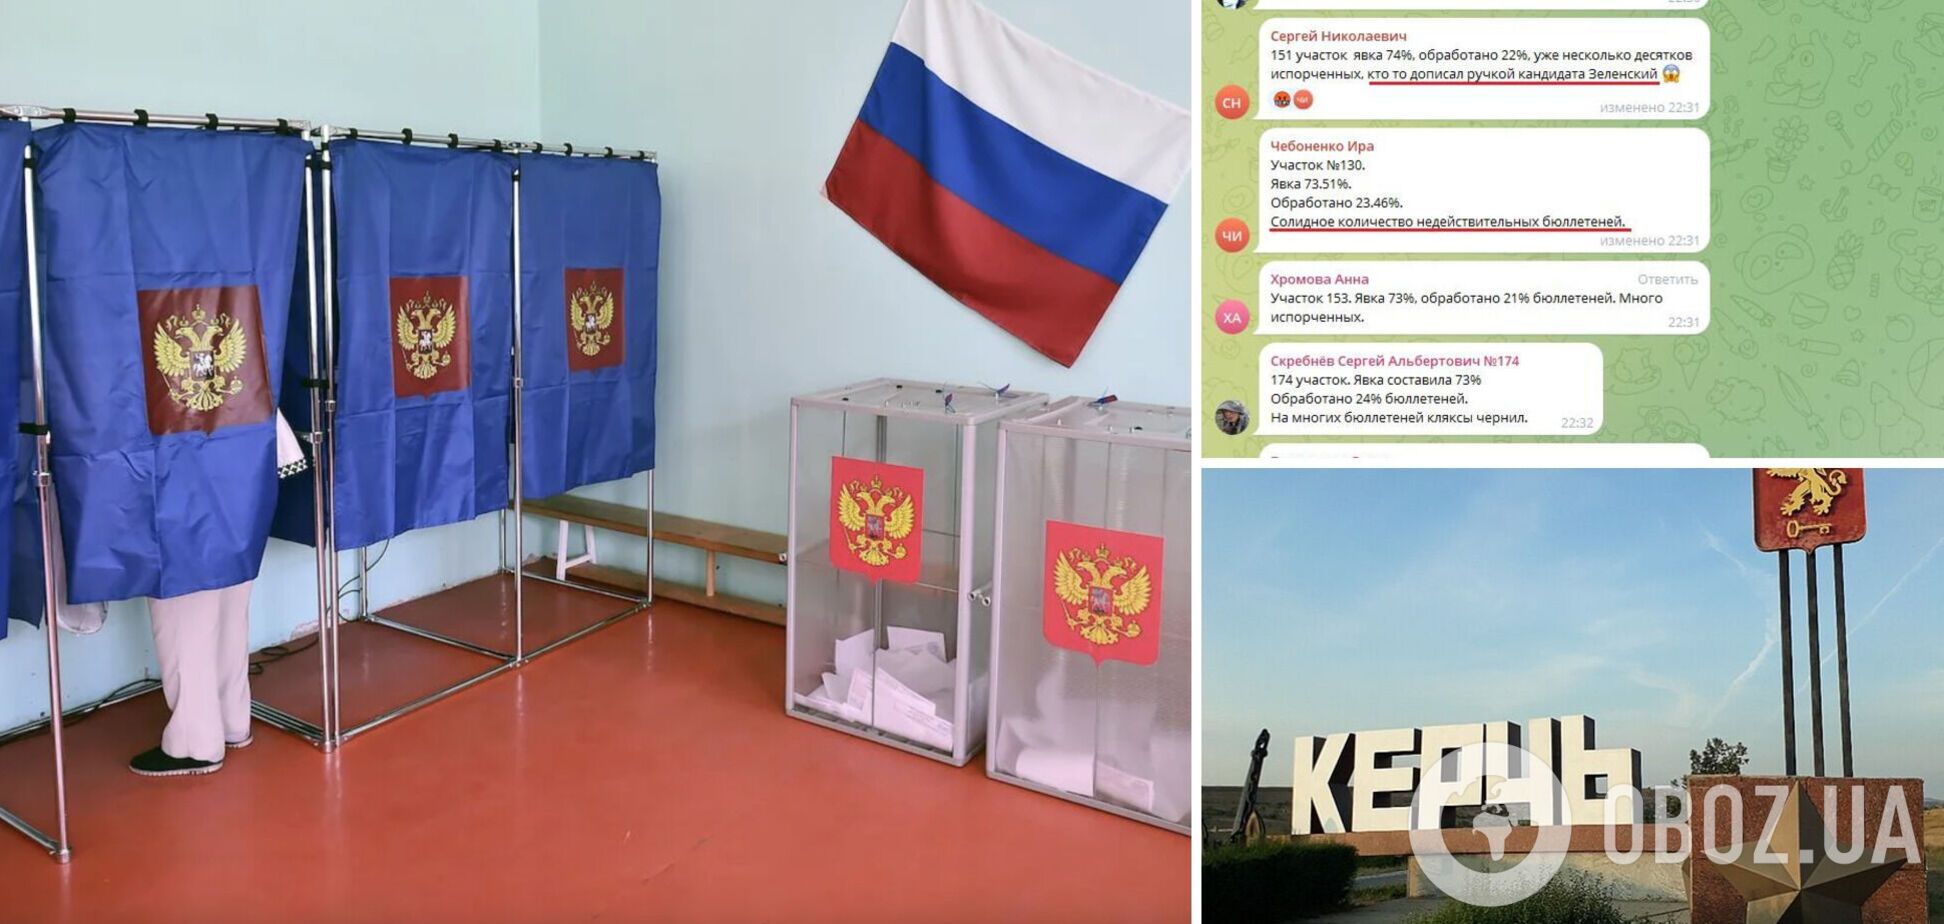 'Зачеркивают кандидатуру Путина': в чате 'избиркома' Керчи отчитываются о массовой порче бюллетеней. Фото